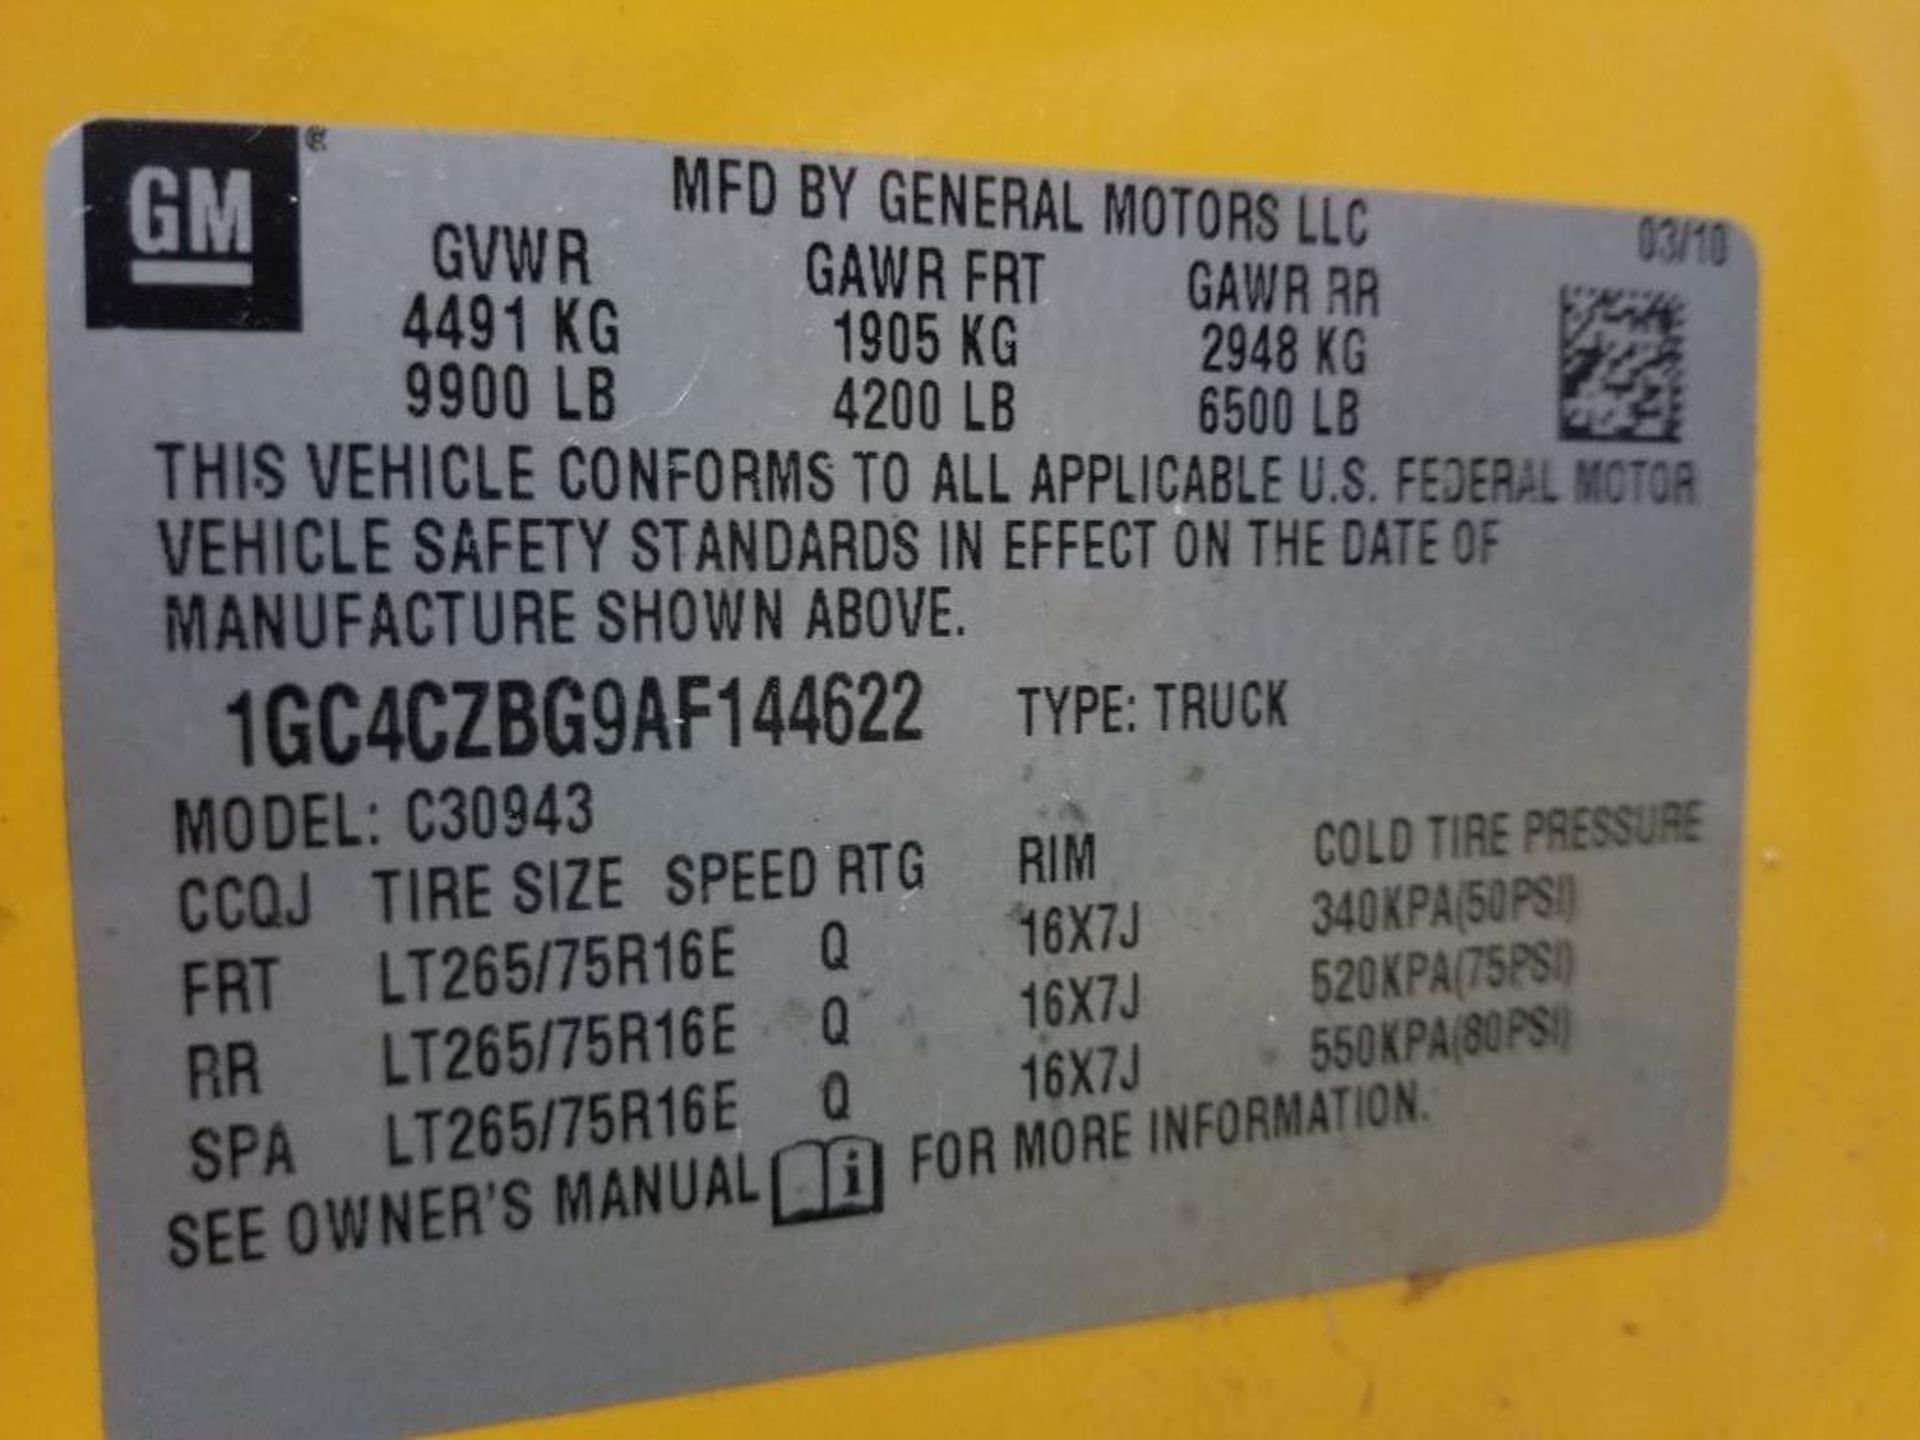 2010 Chevy Silverado 4 door, 3500 HD. Vortec gas engine. VIN 1GC4CZBG9AF144622. - Image 46 of 52